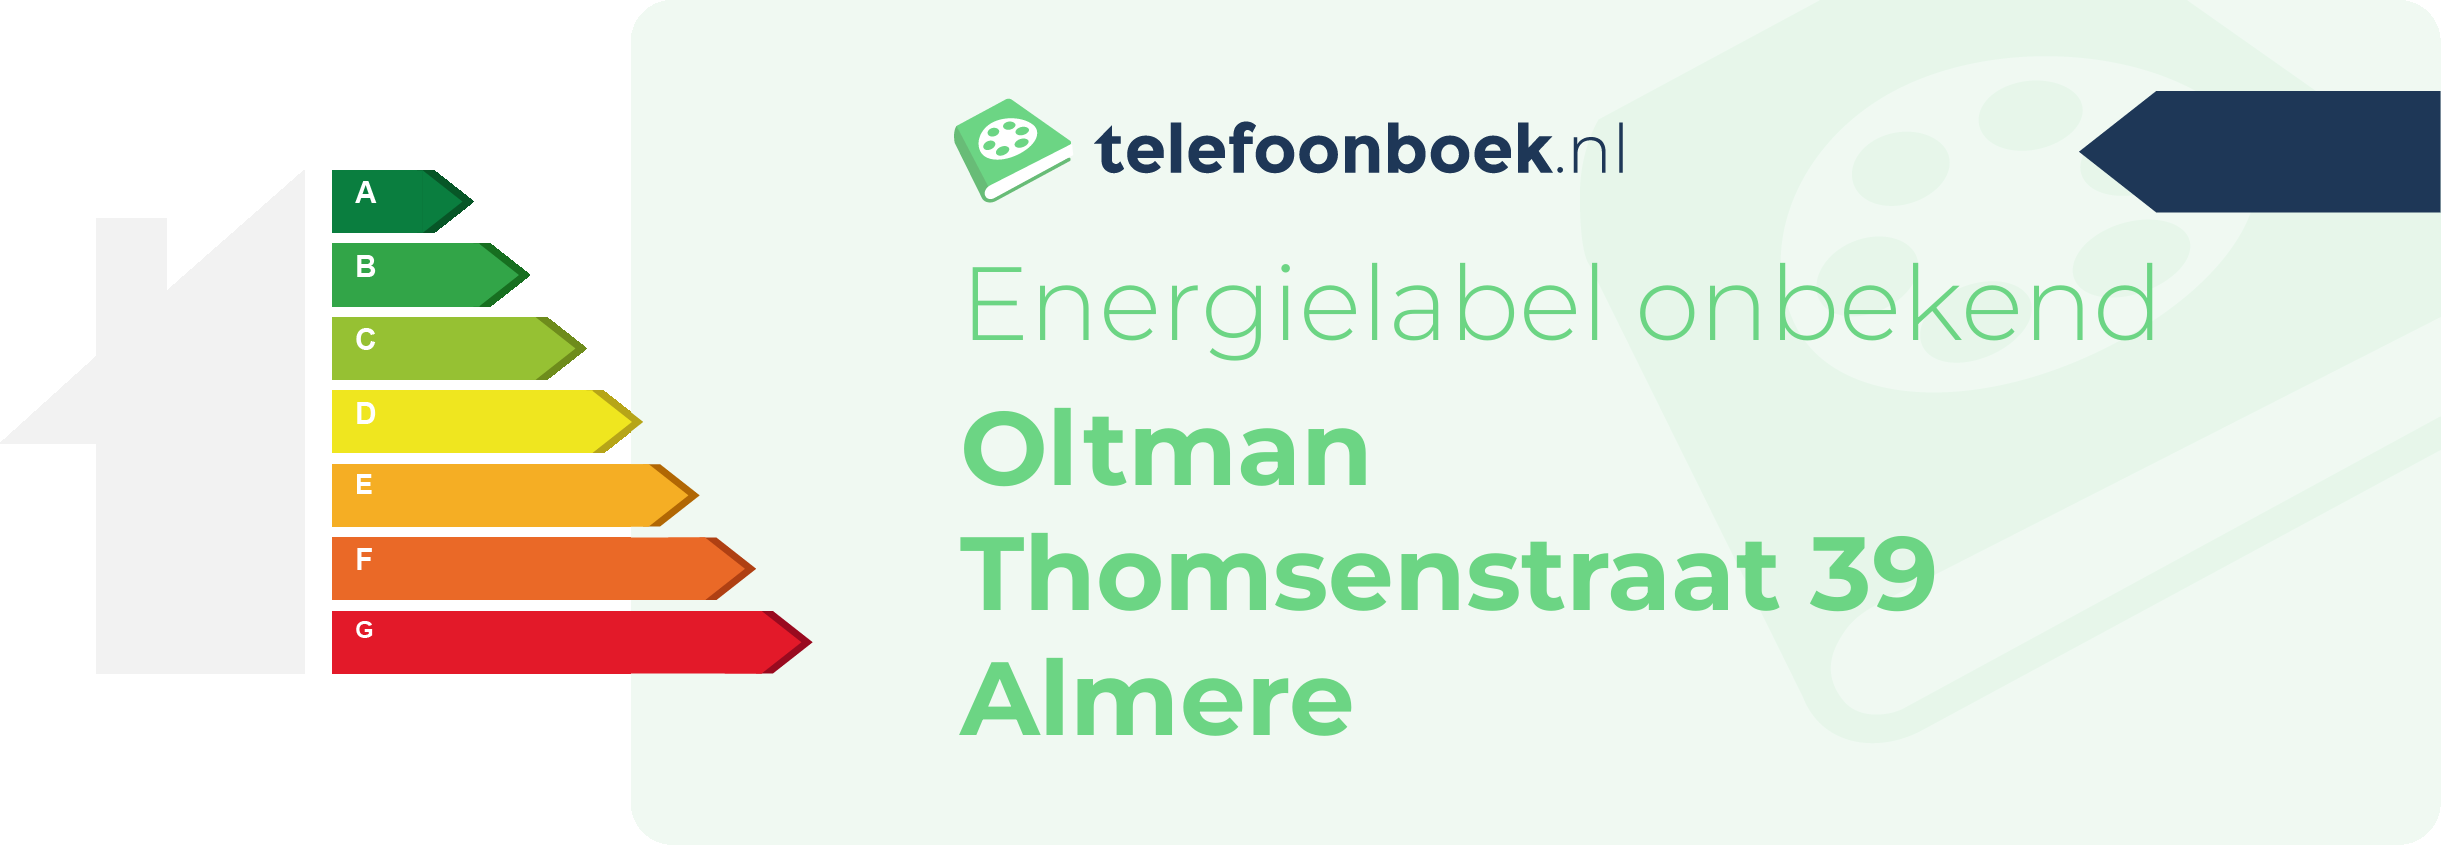 Energielabel Oltman Thomsenstraat 39 Almere